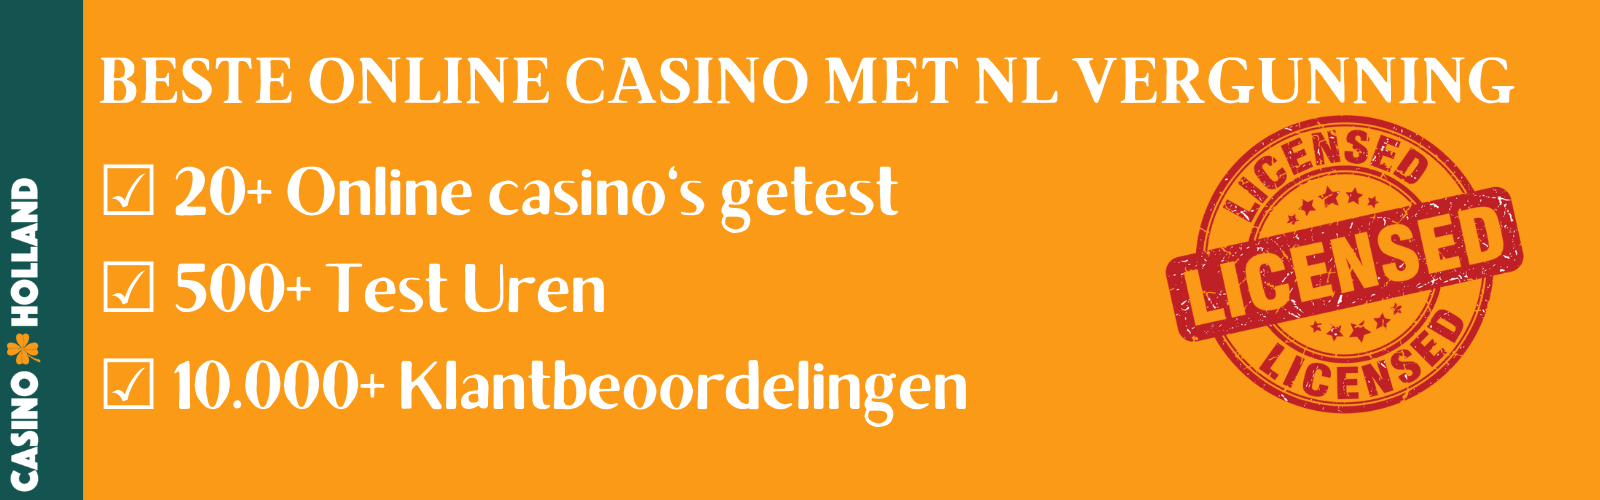 Online Casino met Vergunning